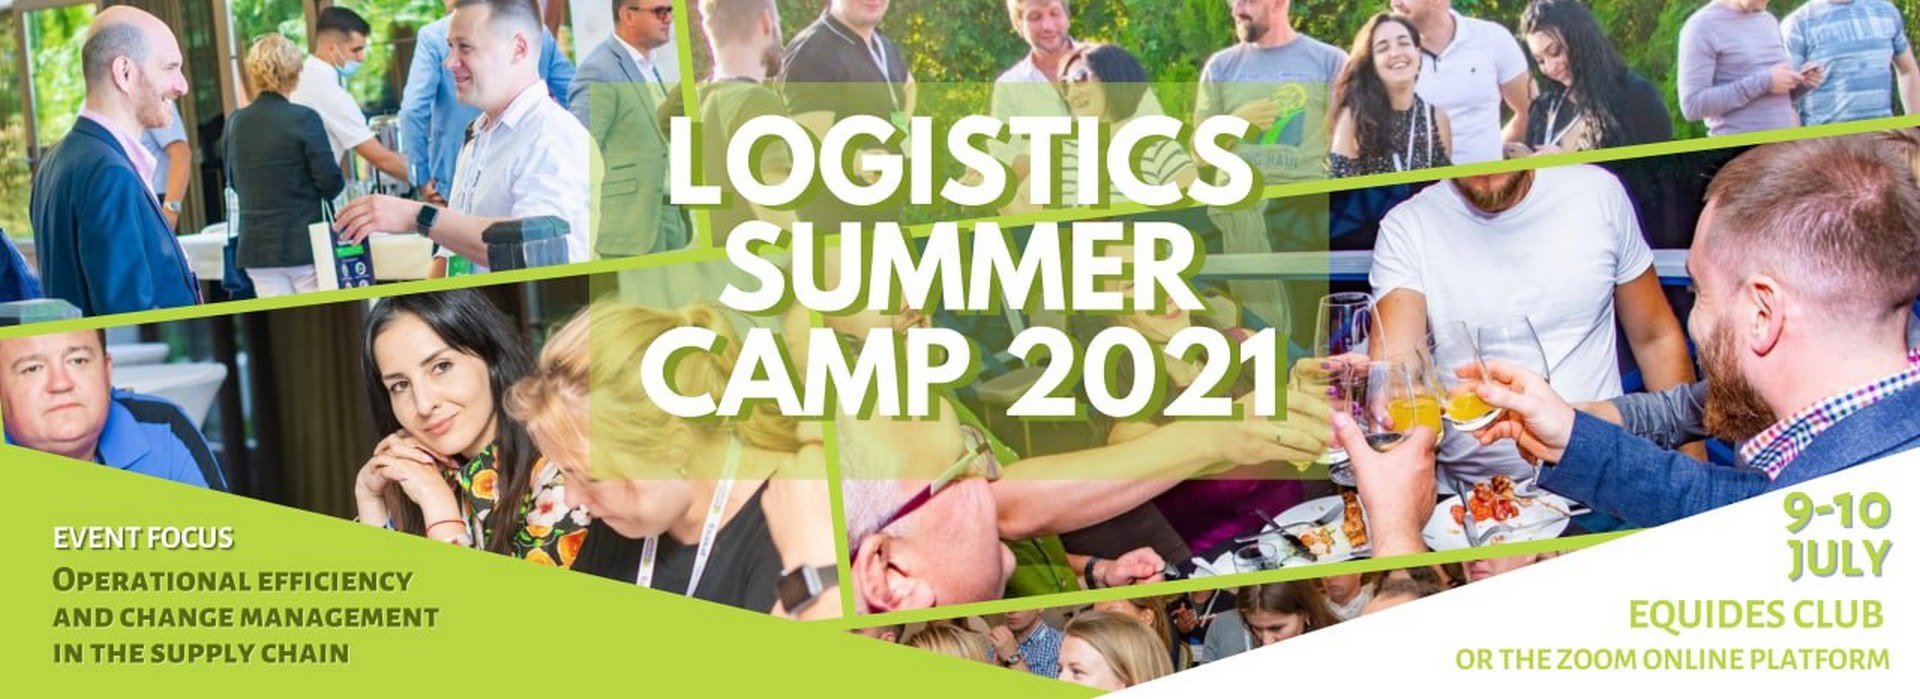 Logistics Summer Camp 2021